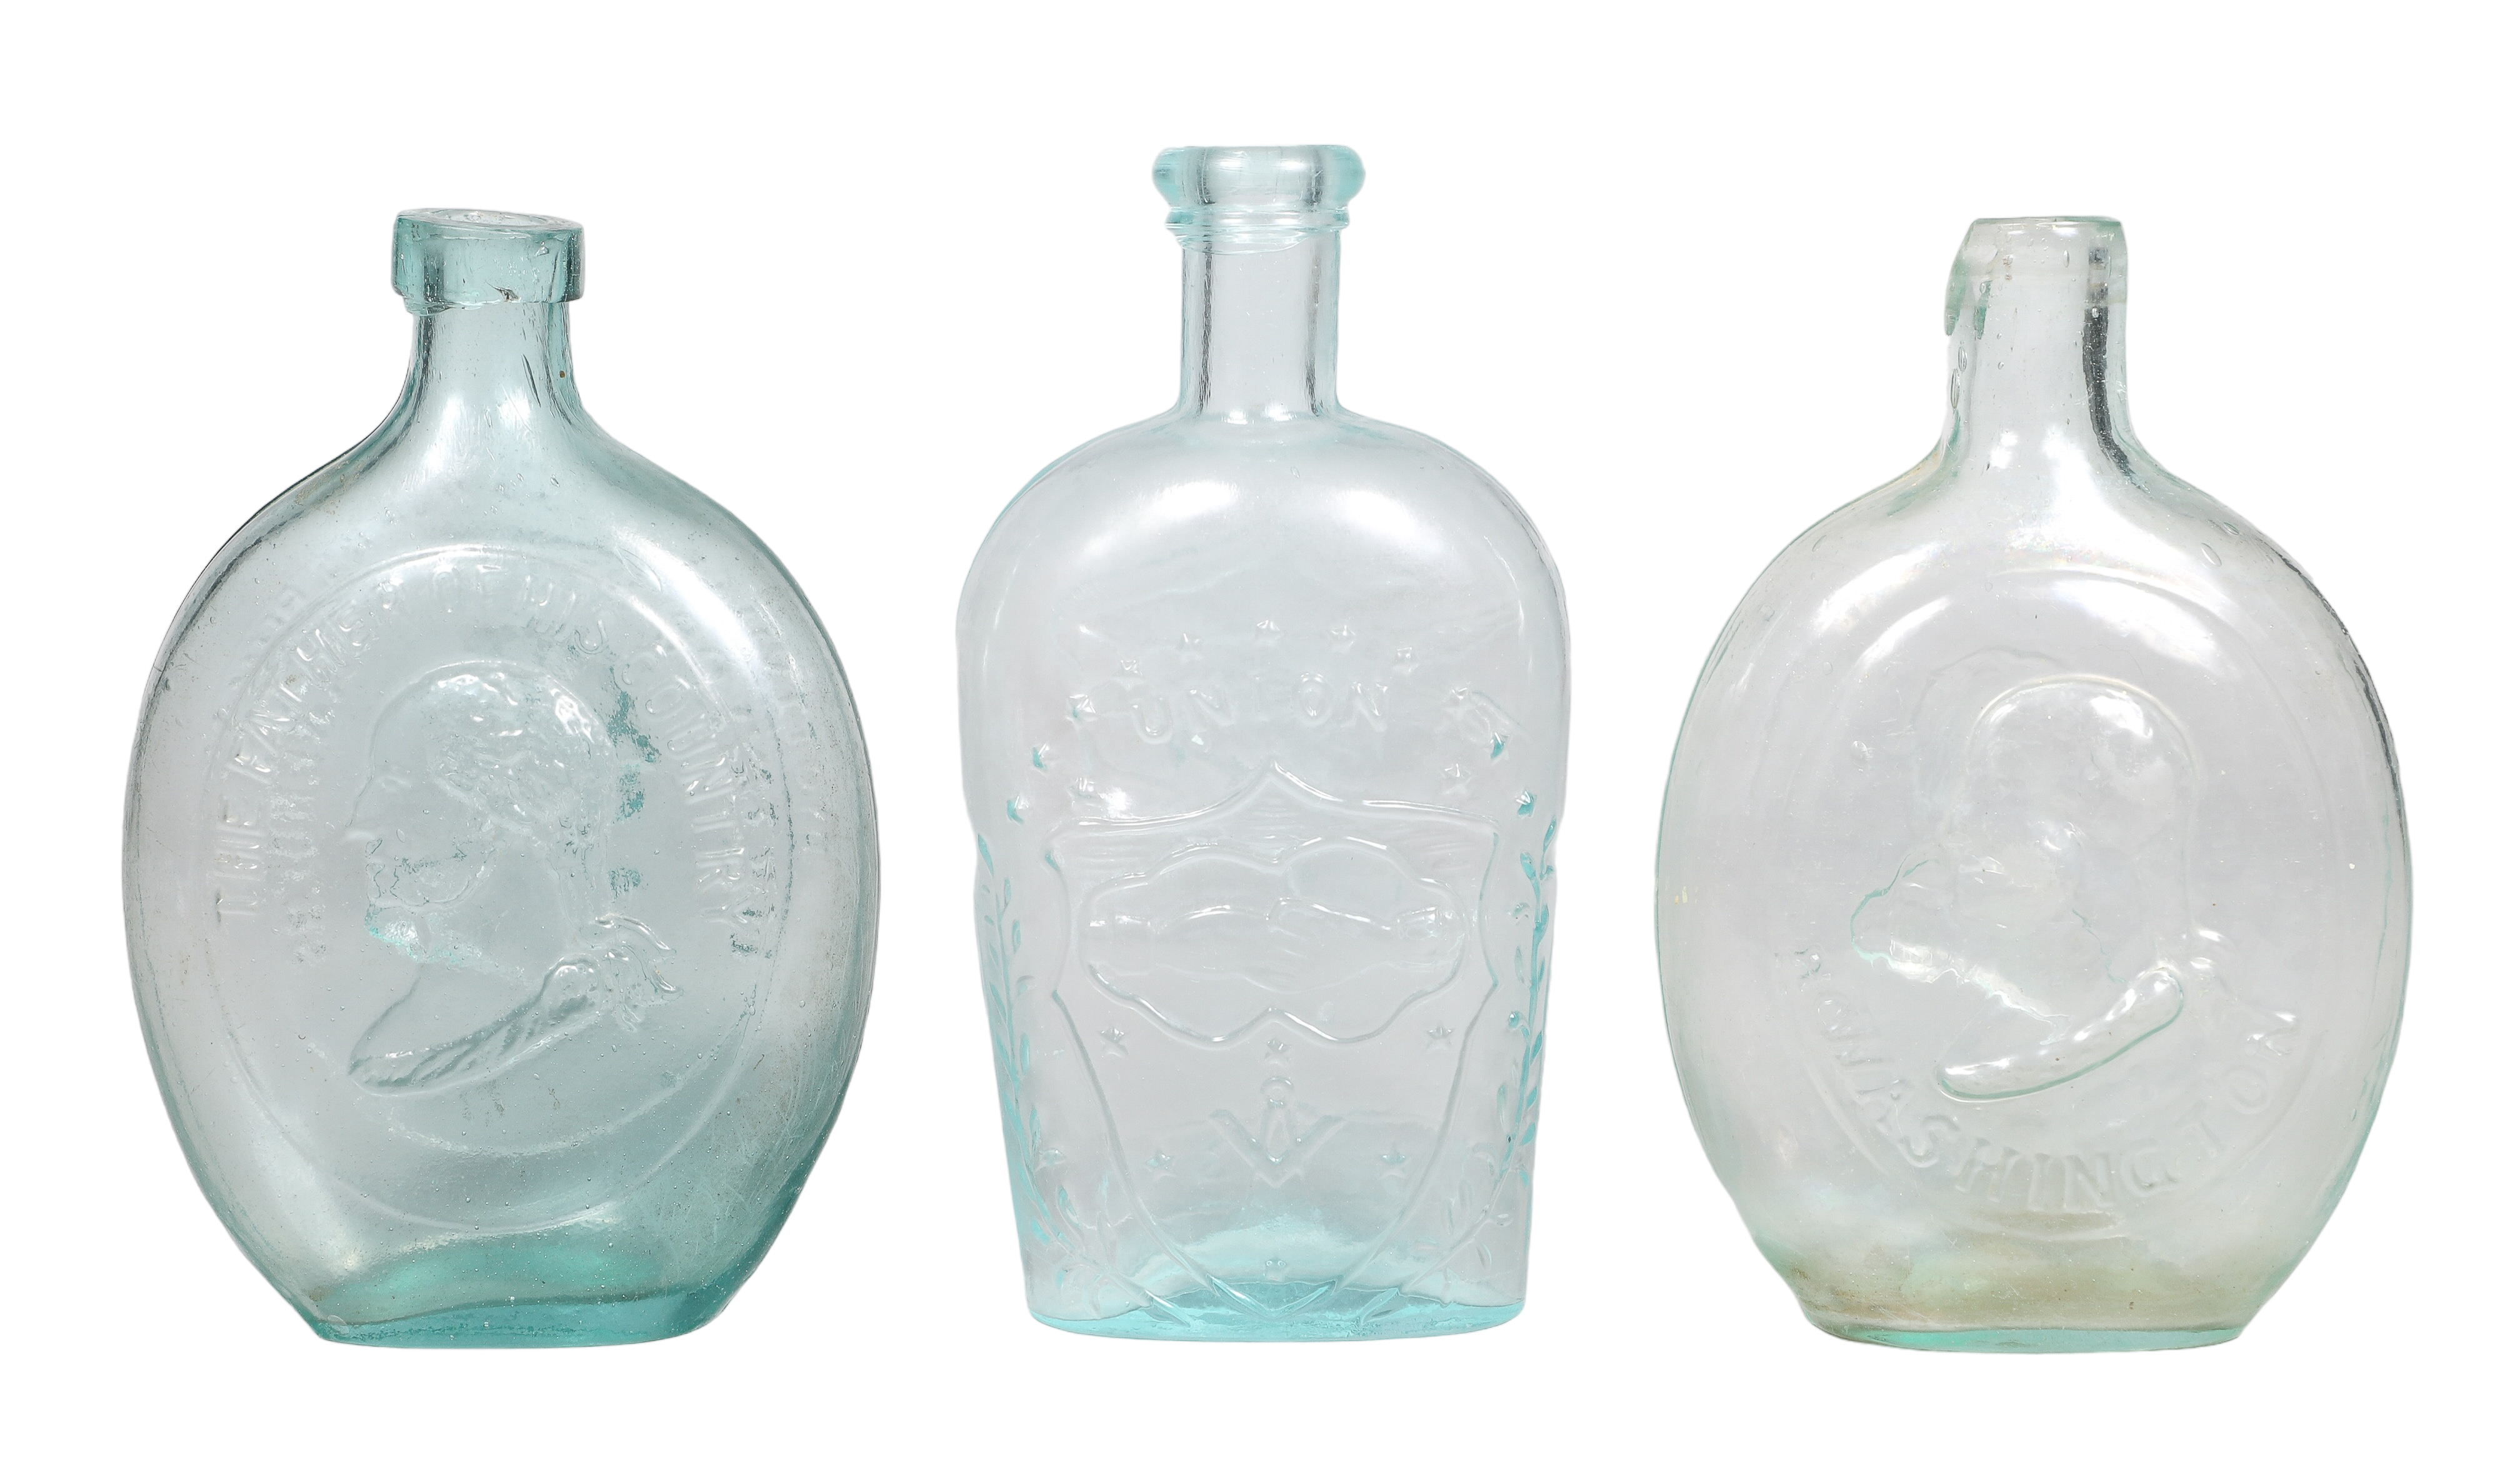  3 Mold blown glass flask bottles 2e1b23